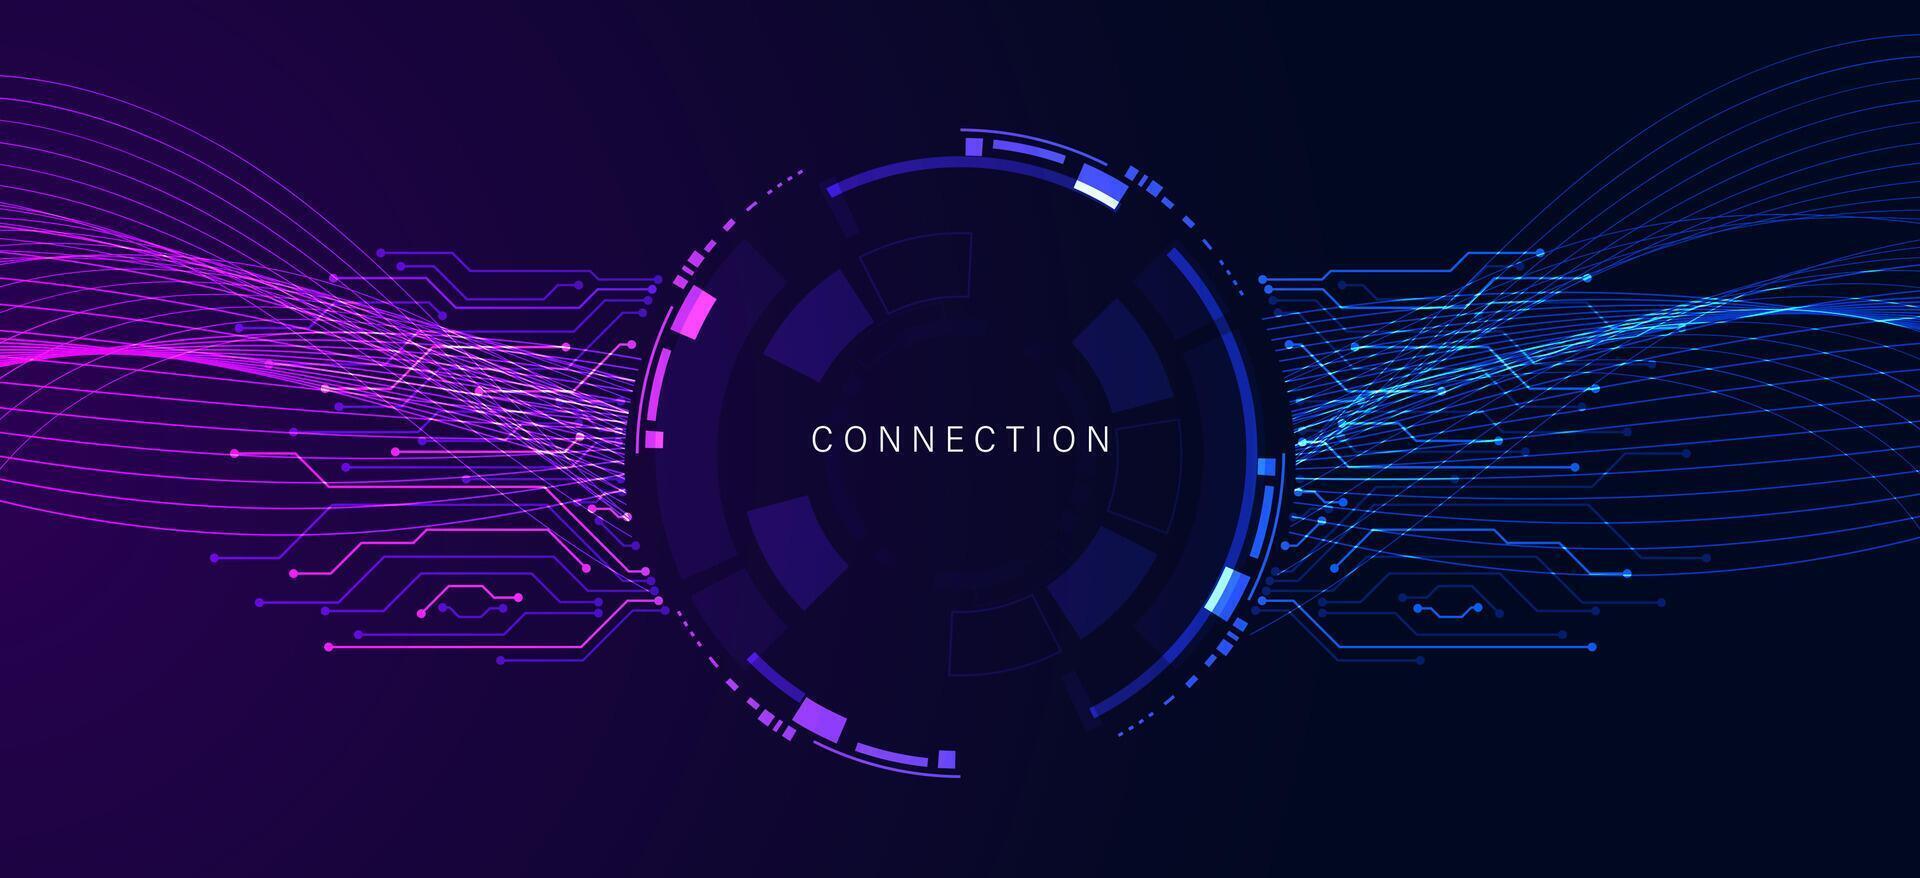 circulo circuito tablero tema conexión vistoso y neón ligero púrpura y azul ola en circulo digital y tecnología antecedentes con computadora sistemas ligero azul.hermoso espumoso ligero futurista vector